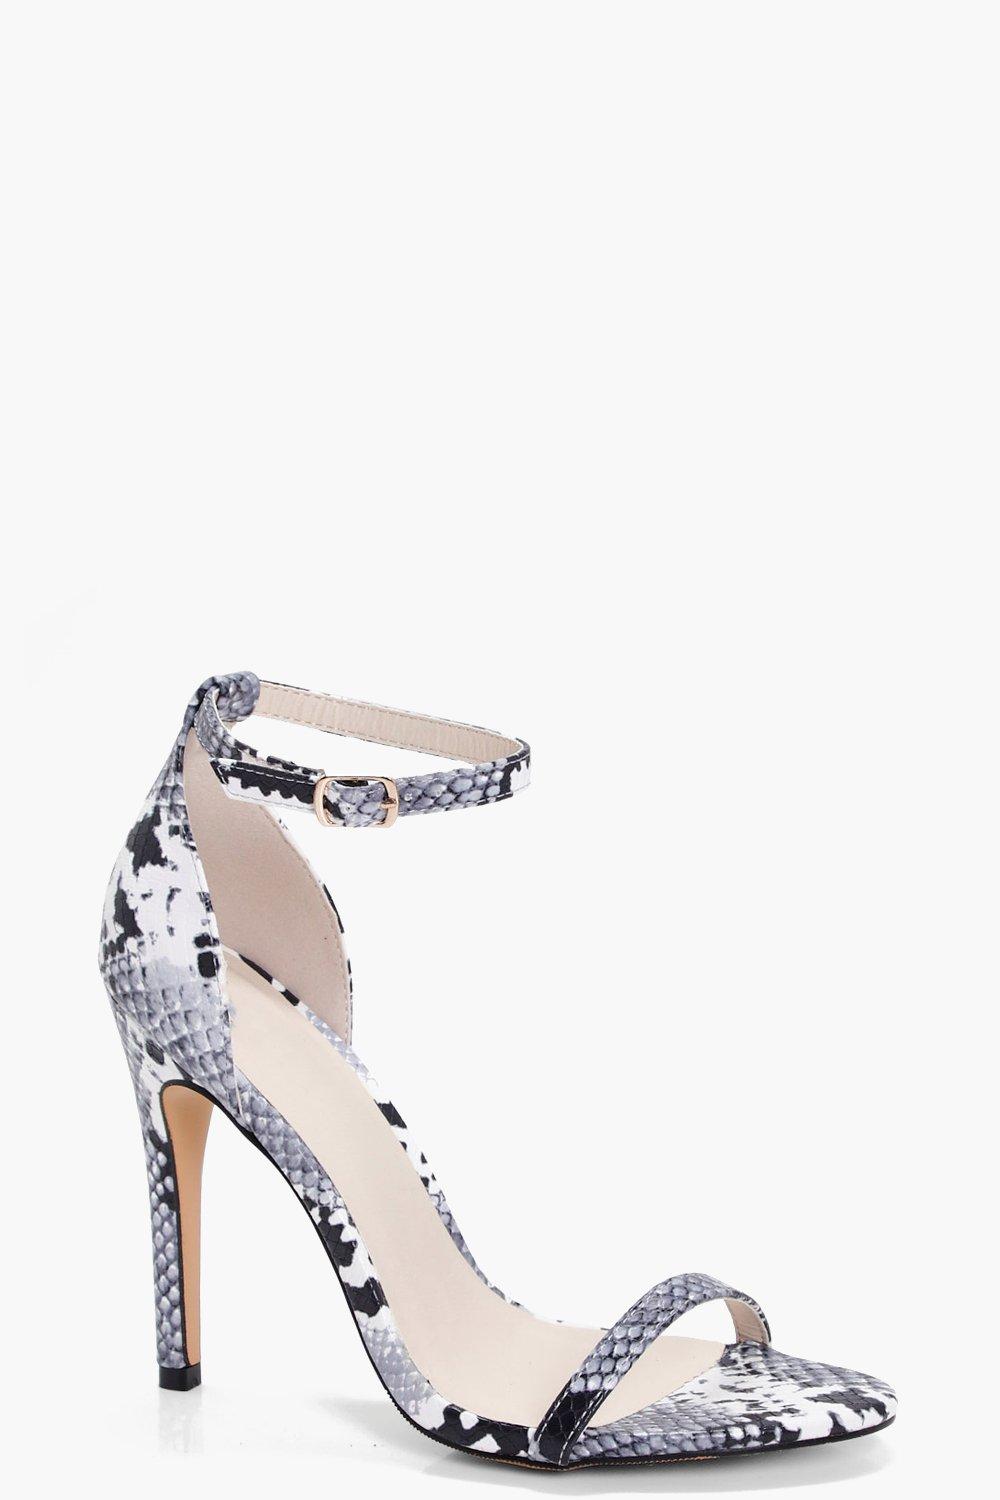 snake print heels